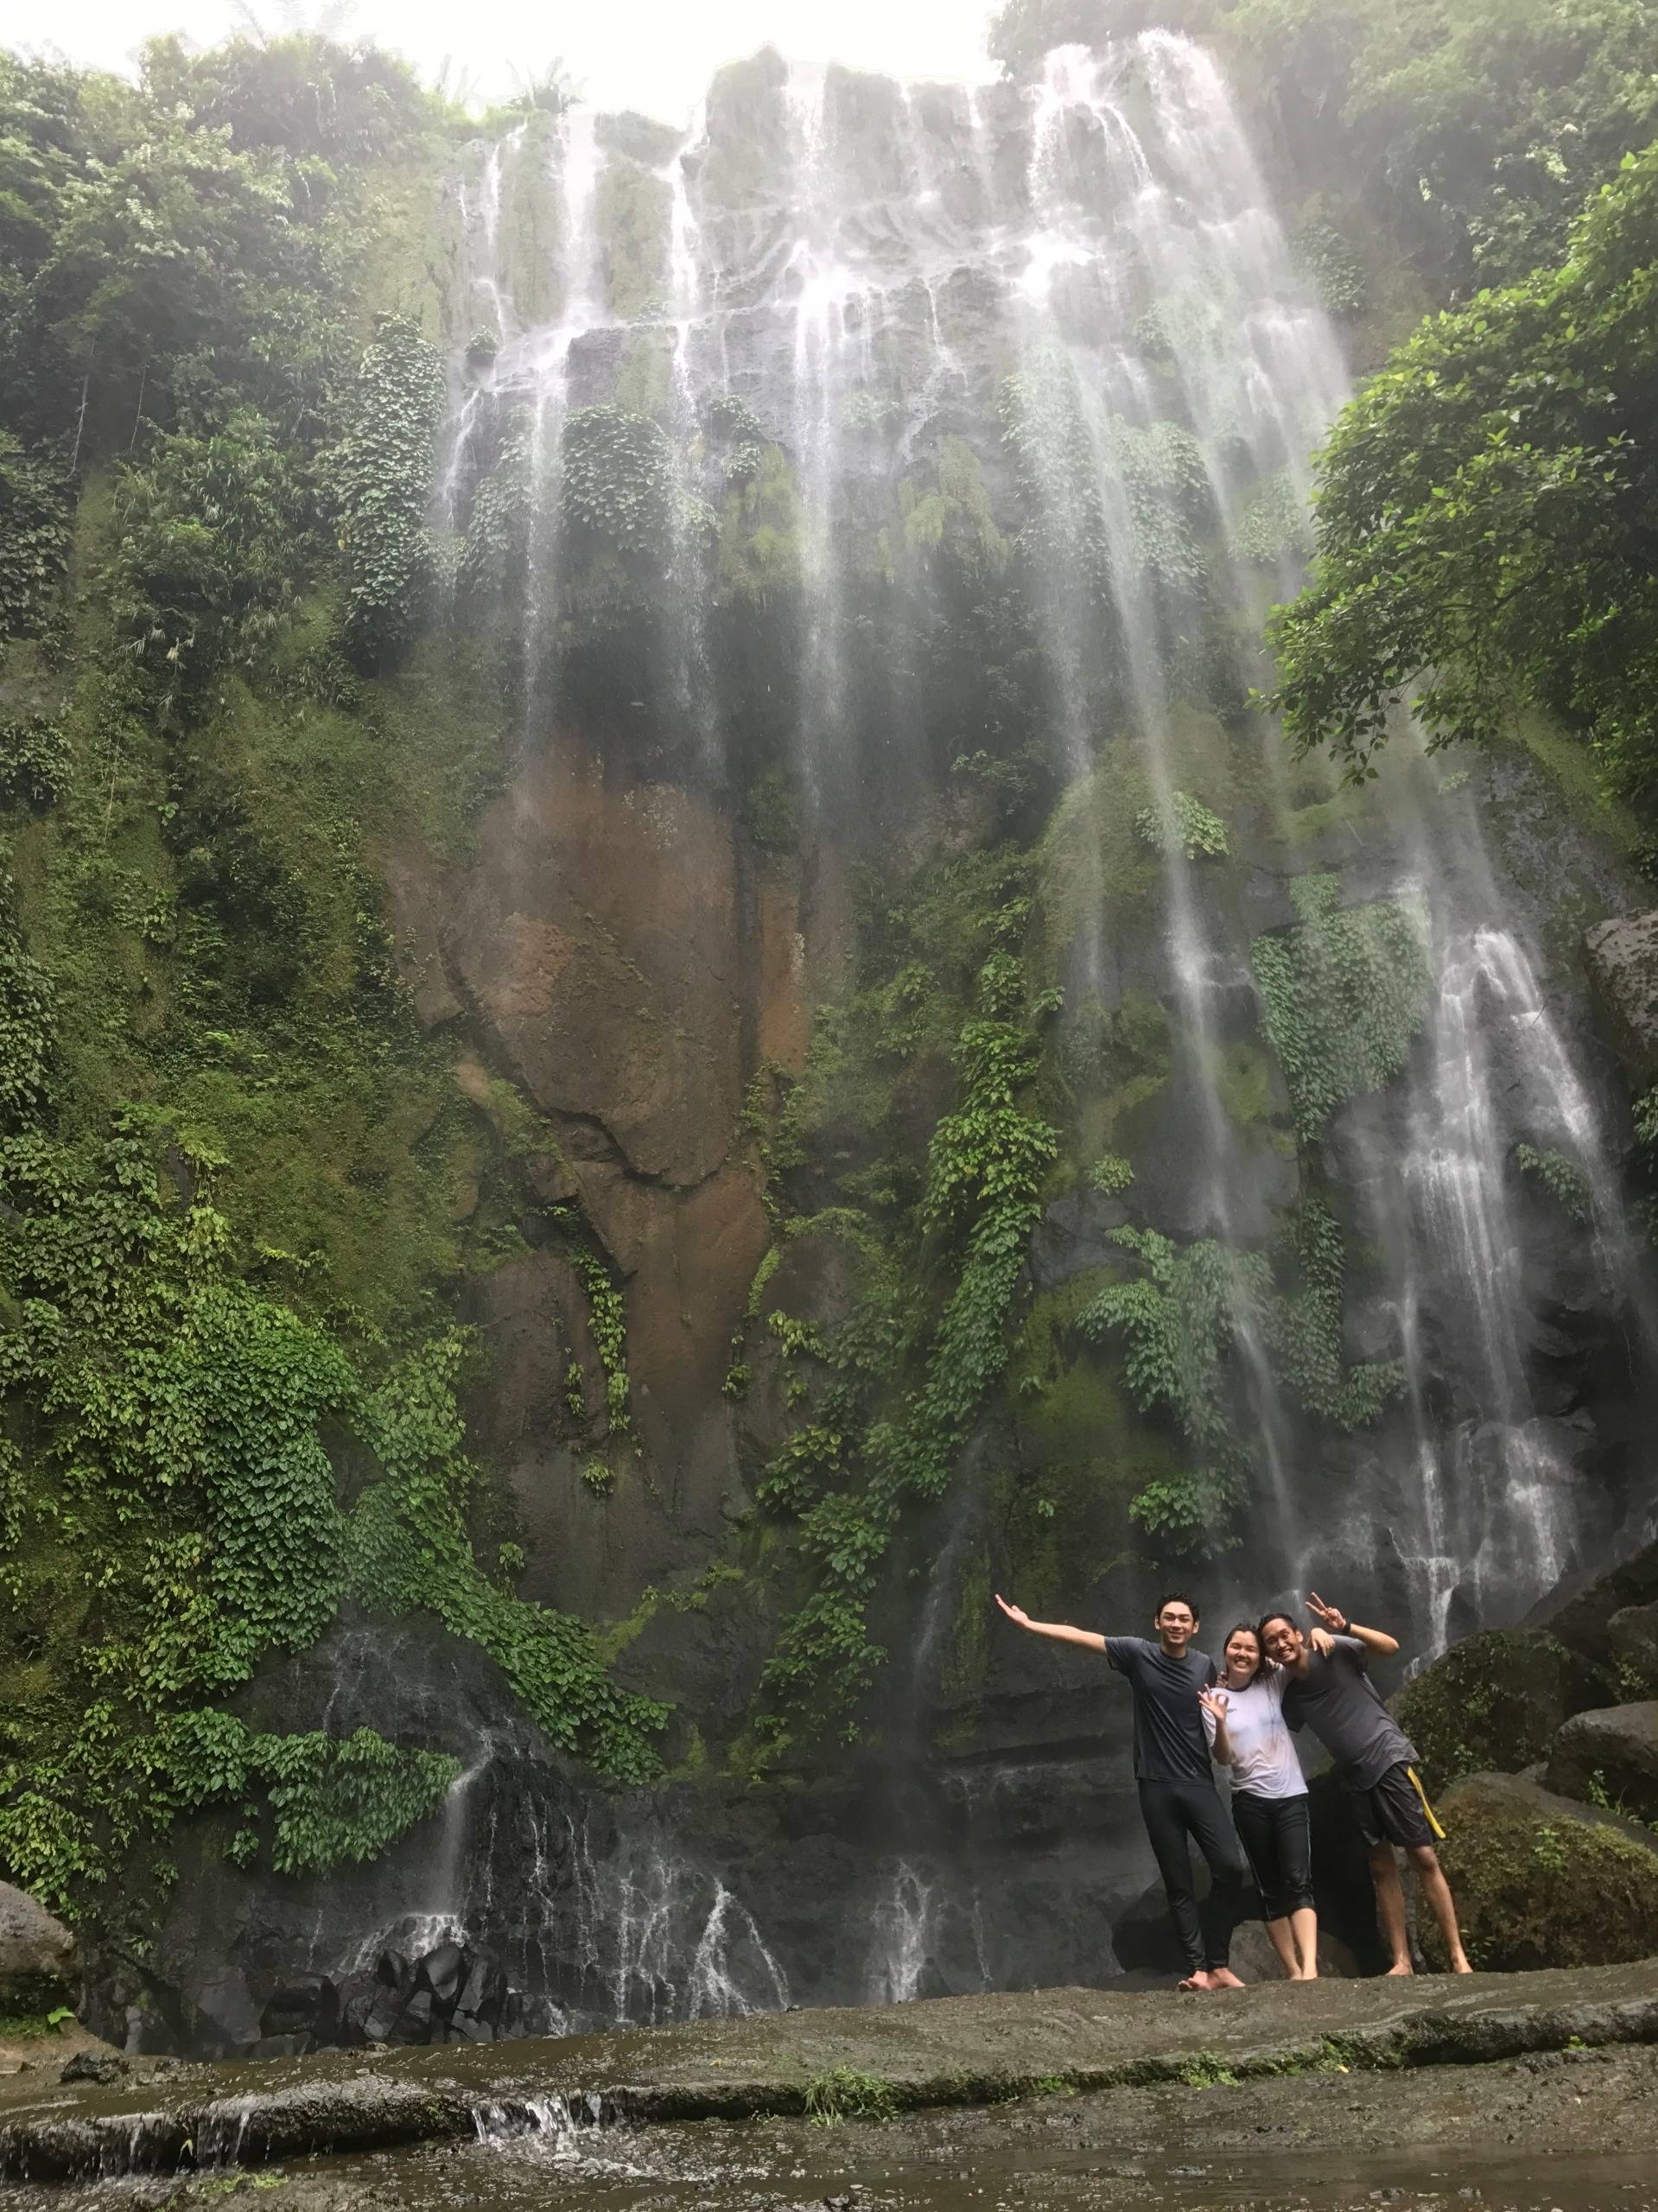 Chasing Waterfalls @ Laguna, Philippines | Travel Blog 6